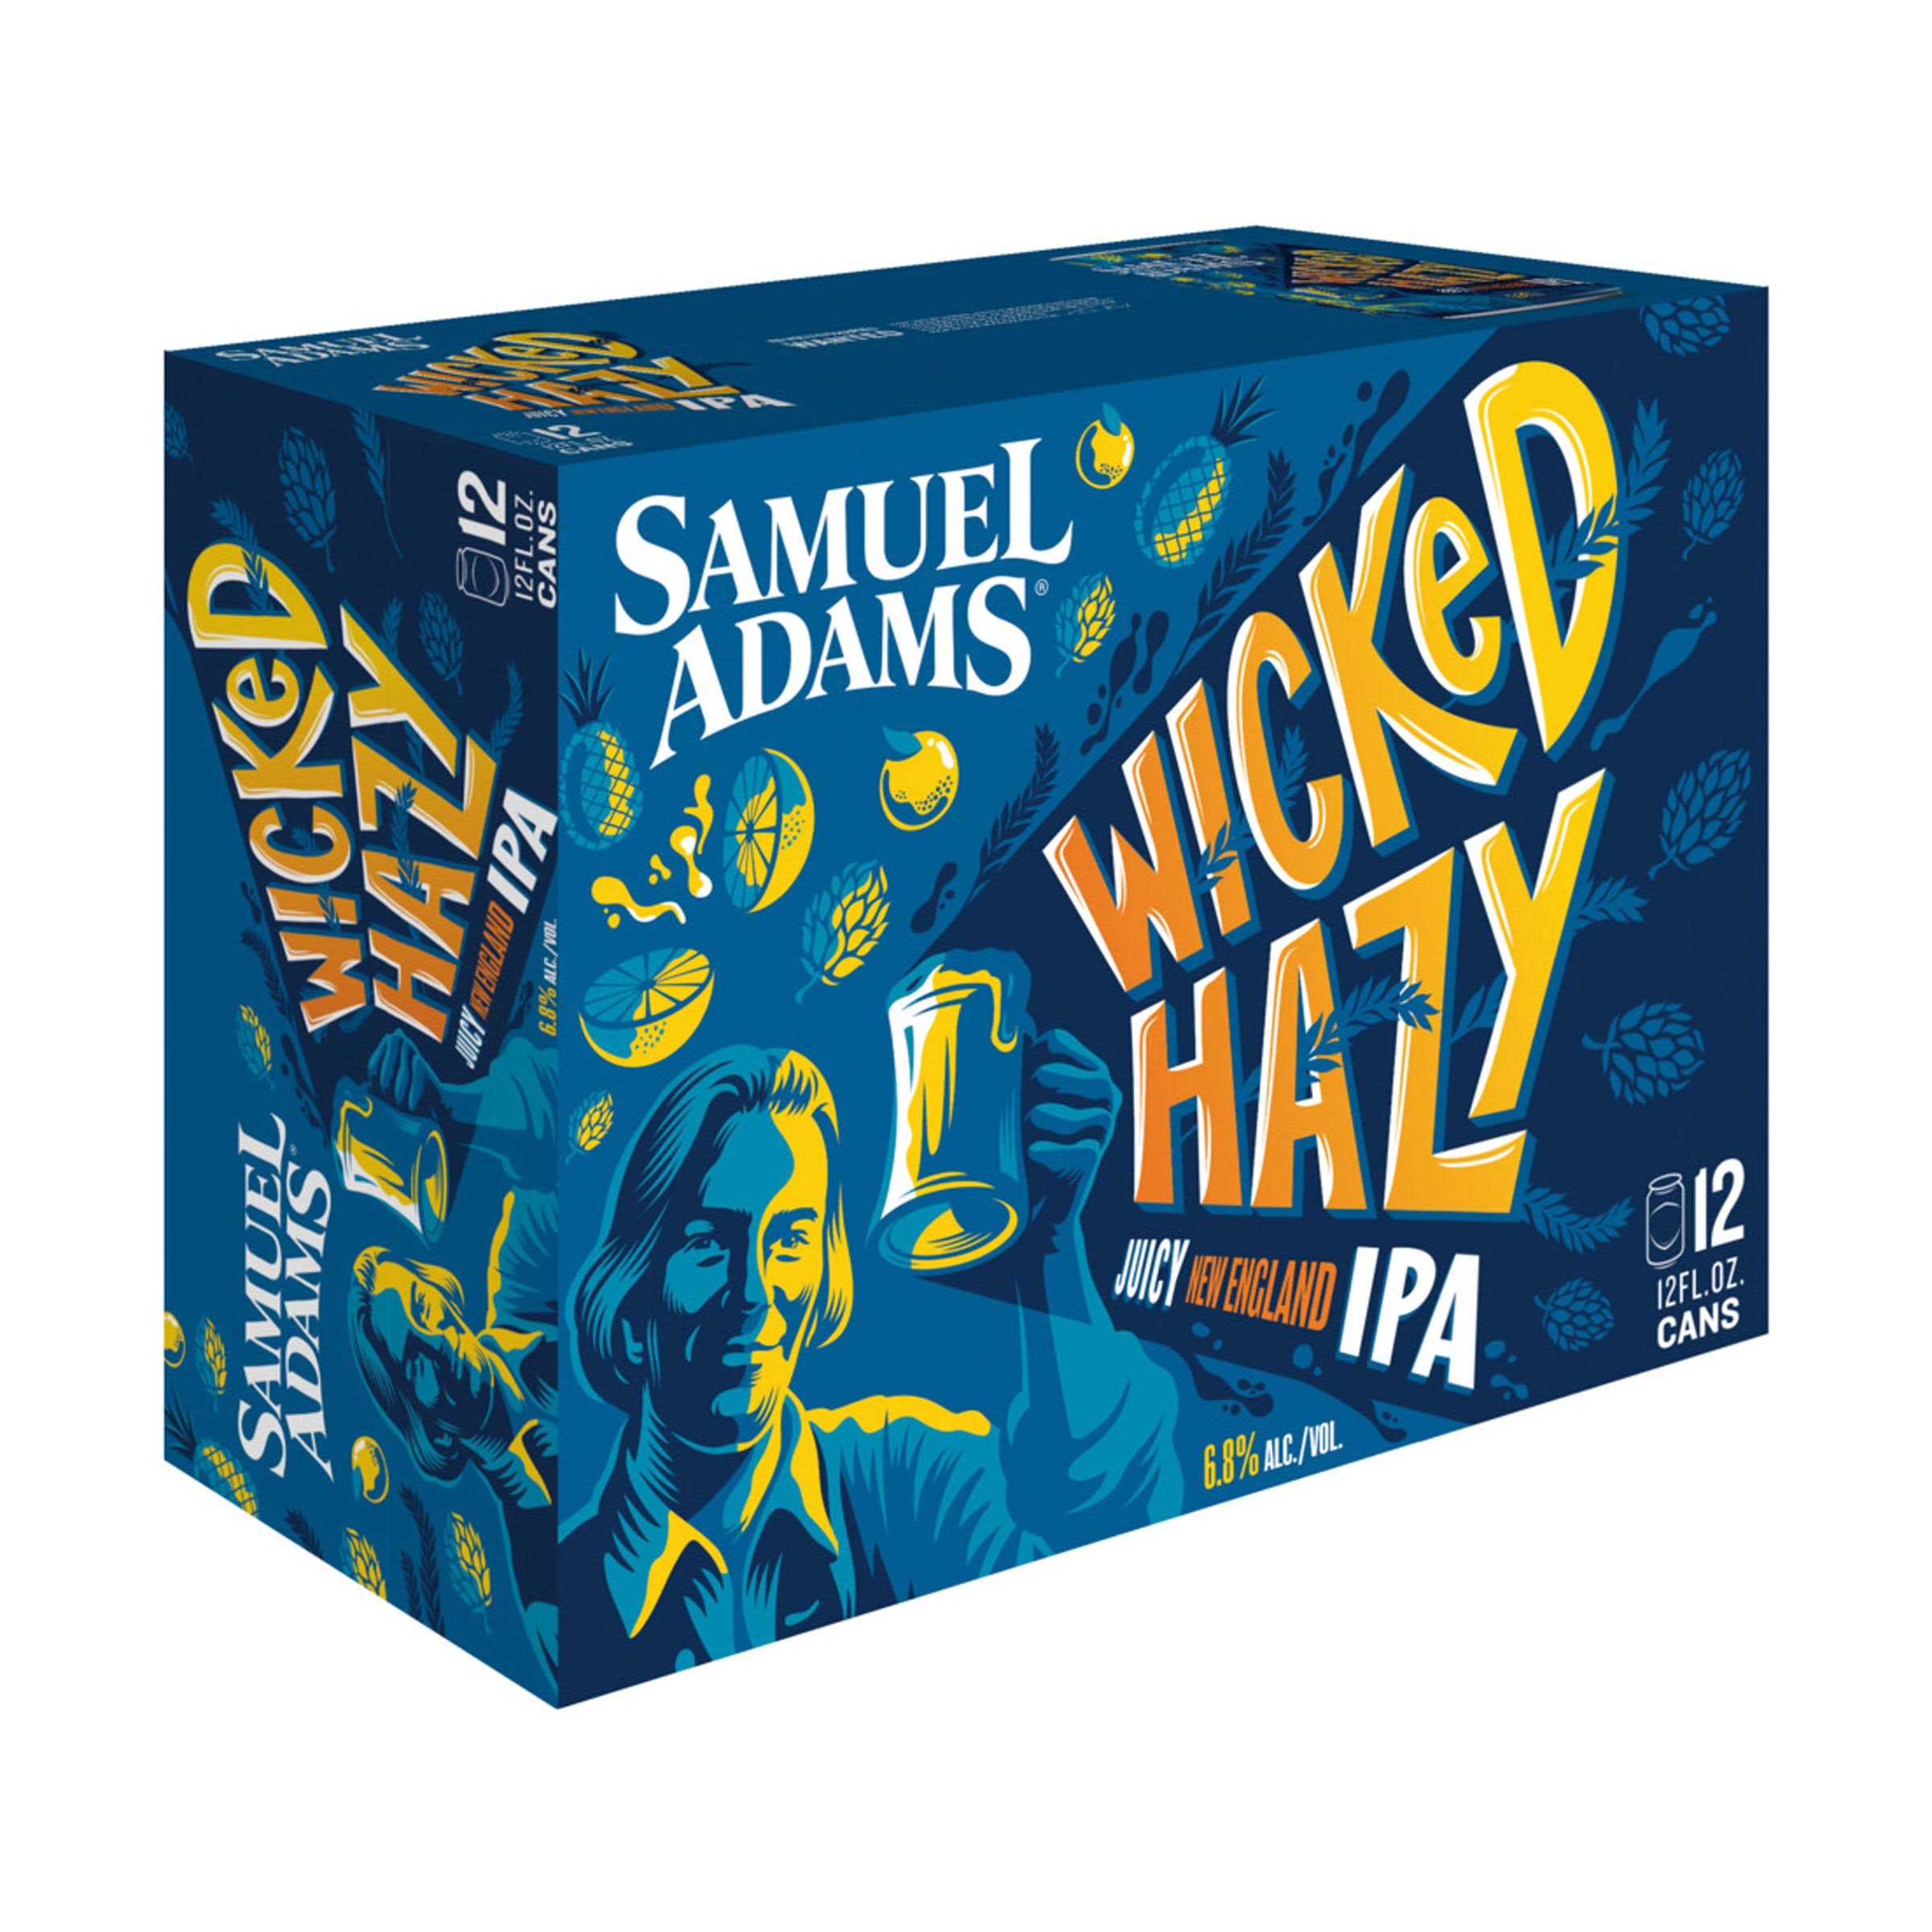 Samuel Adams Beer, IPA, Juicy New England, Wicked Hazy - 12 pack, 12 fl oz cans